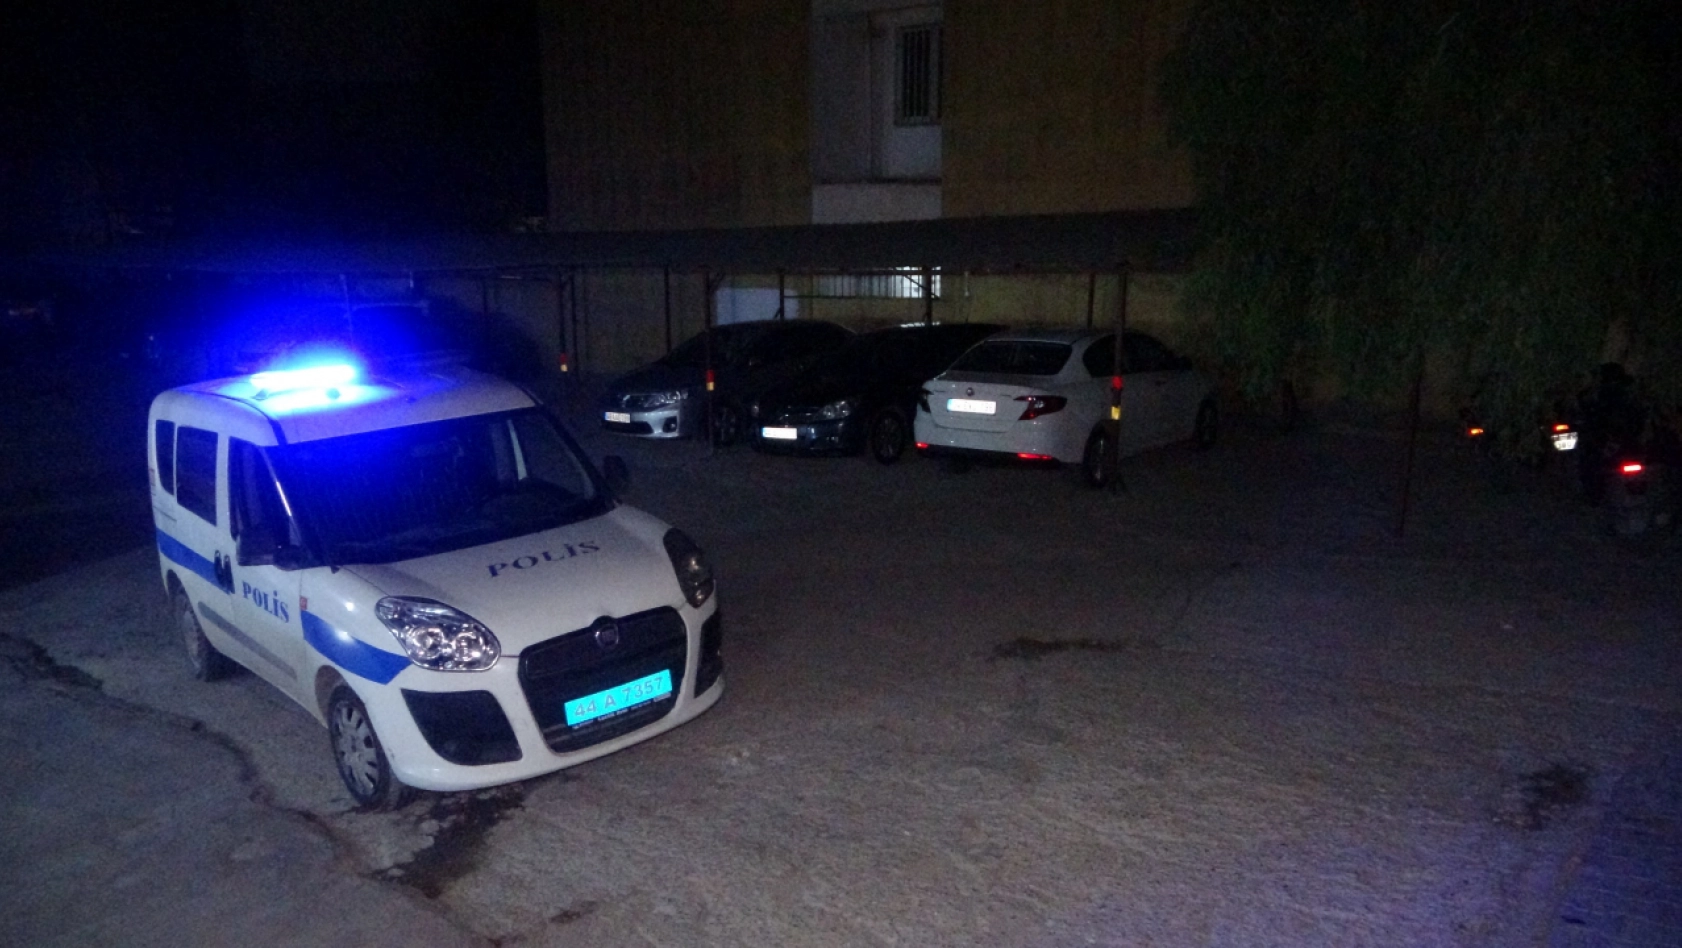 Malatya'daki cinayete 2 tutuklama